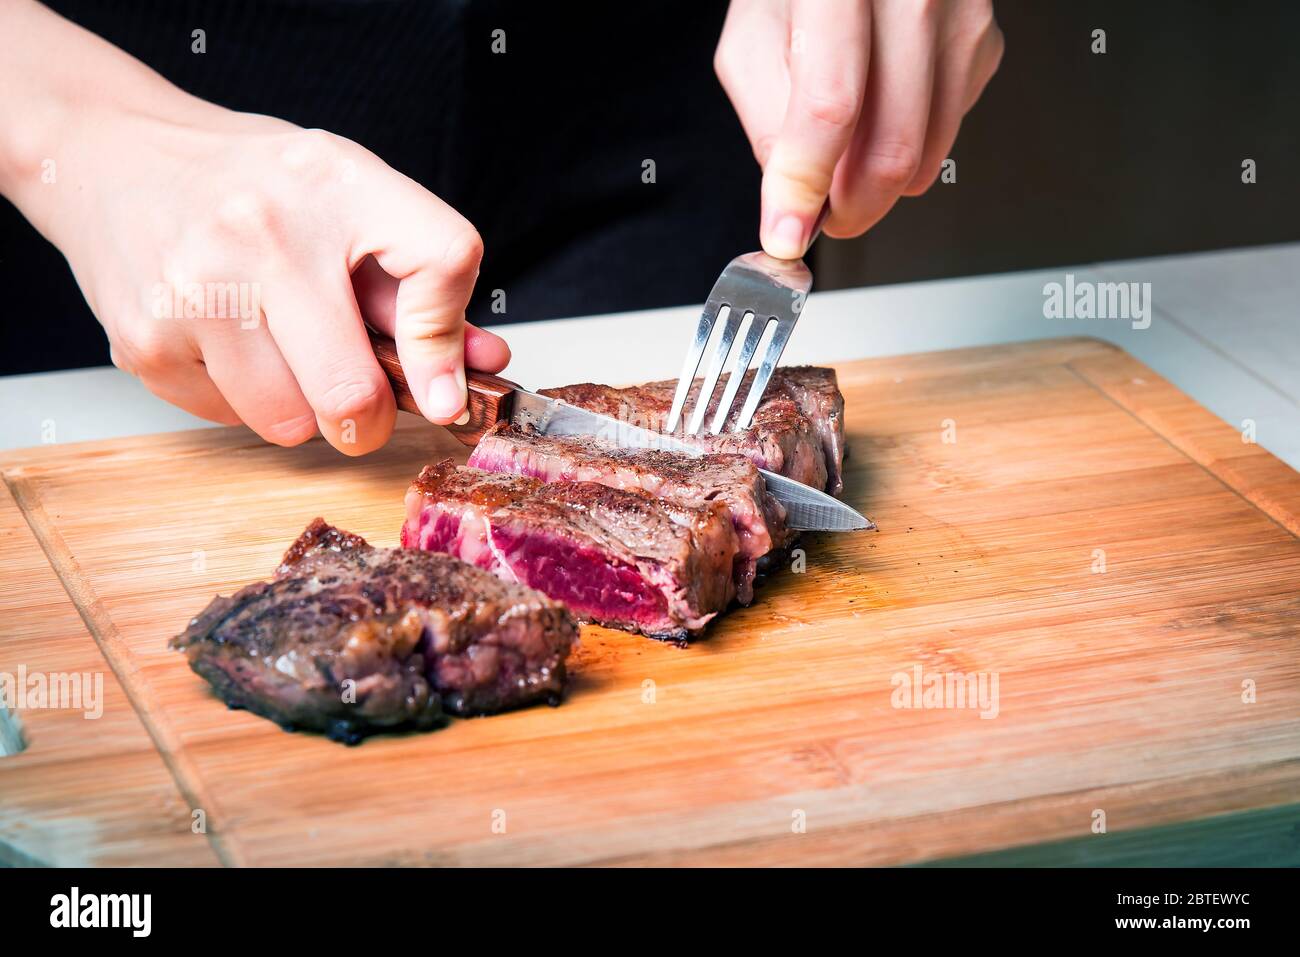 Femme coupant du steak de bœuf pendant la friture à bord. Préparation de nourriture à domicile Banque D'Images